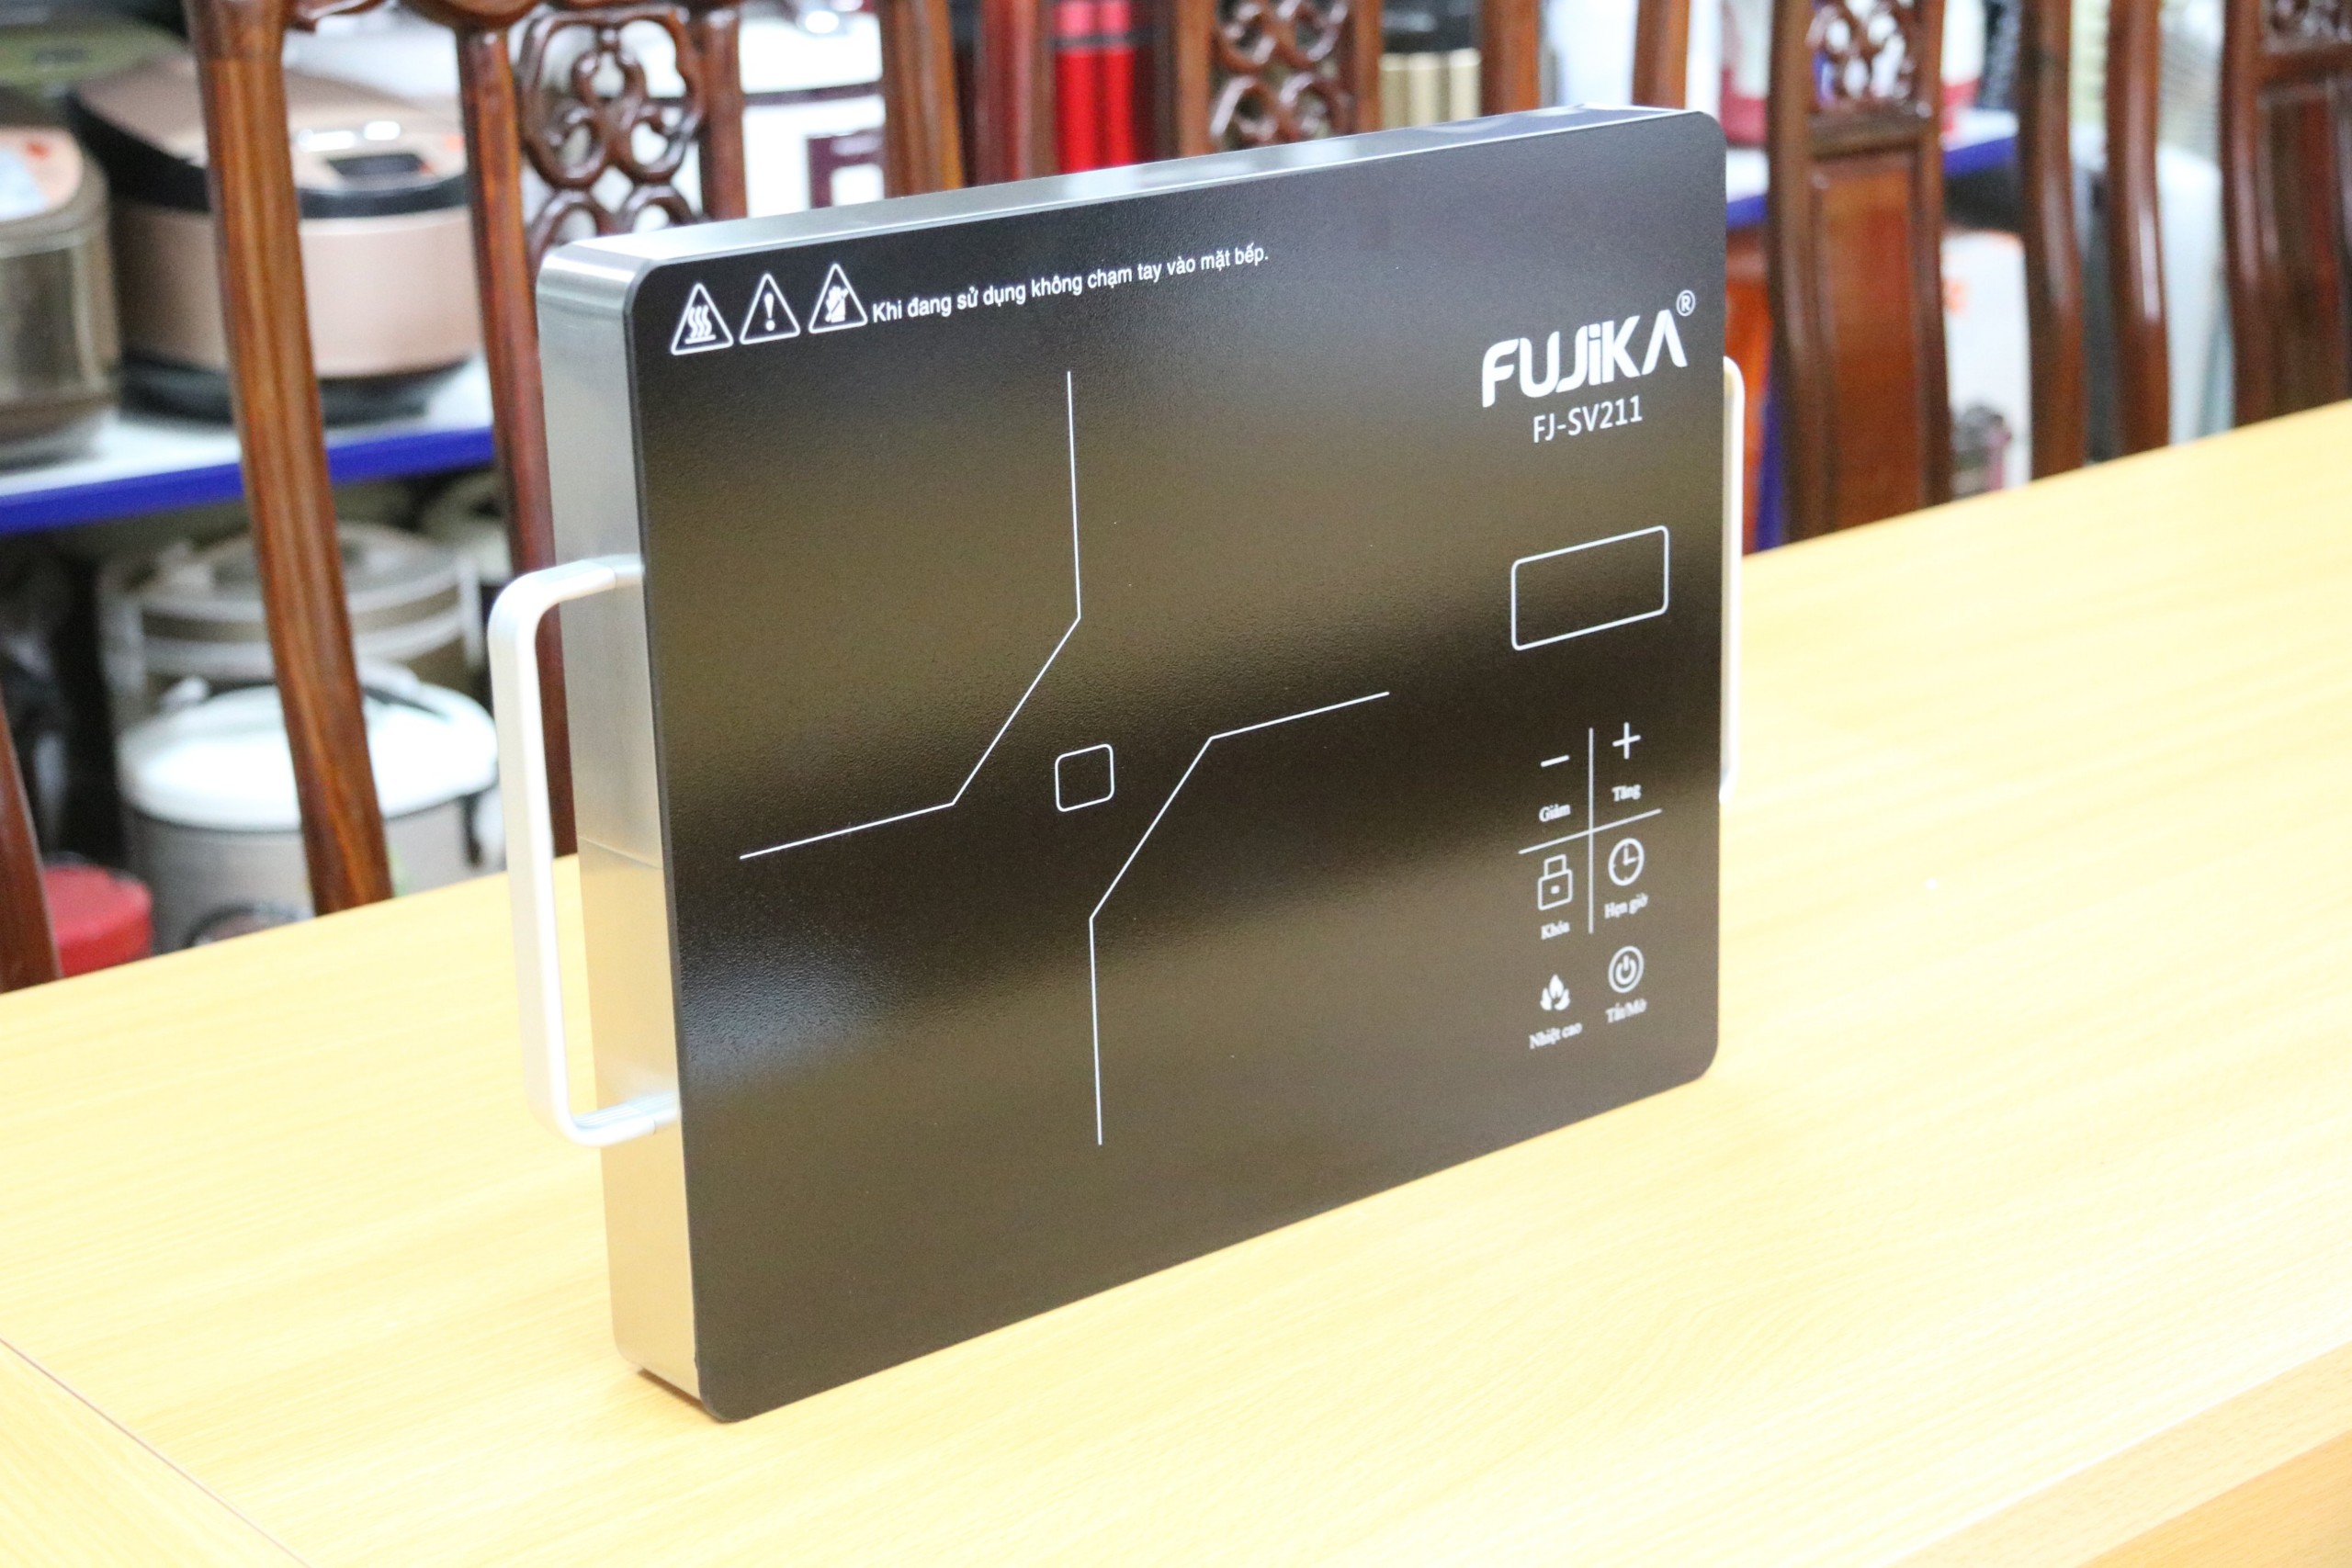 Bếp Hồng Ngoại 2000W Fujika FJ-SV211 không kén nồi chảo-kèm chảo chống dính sâu lòng-Hàng chính hãng